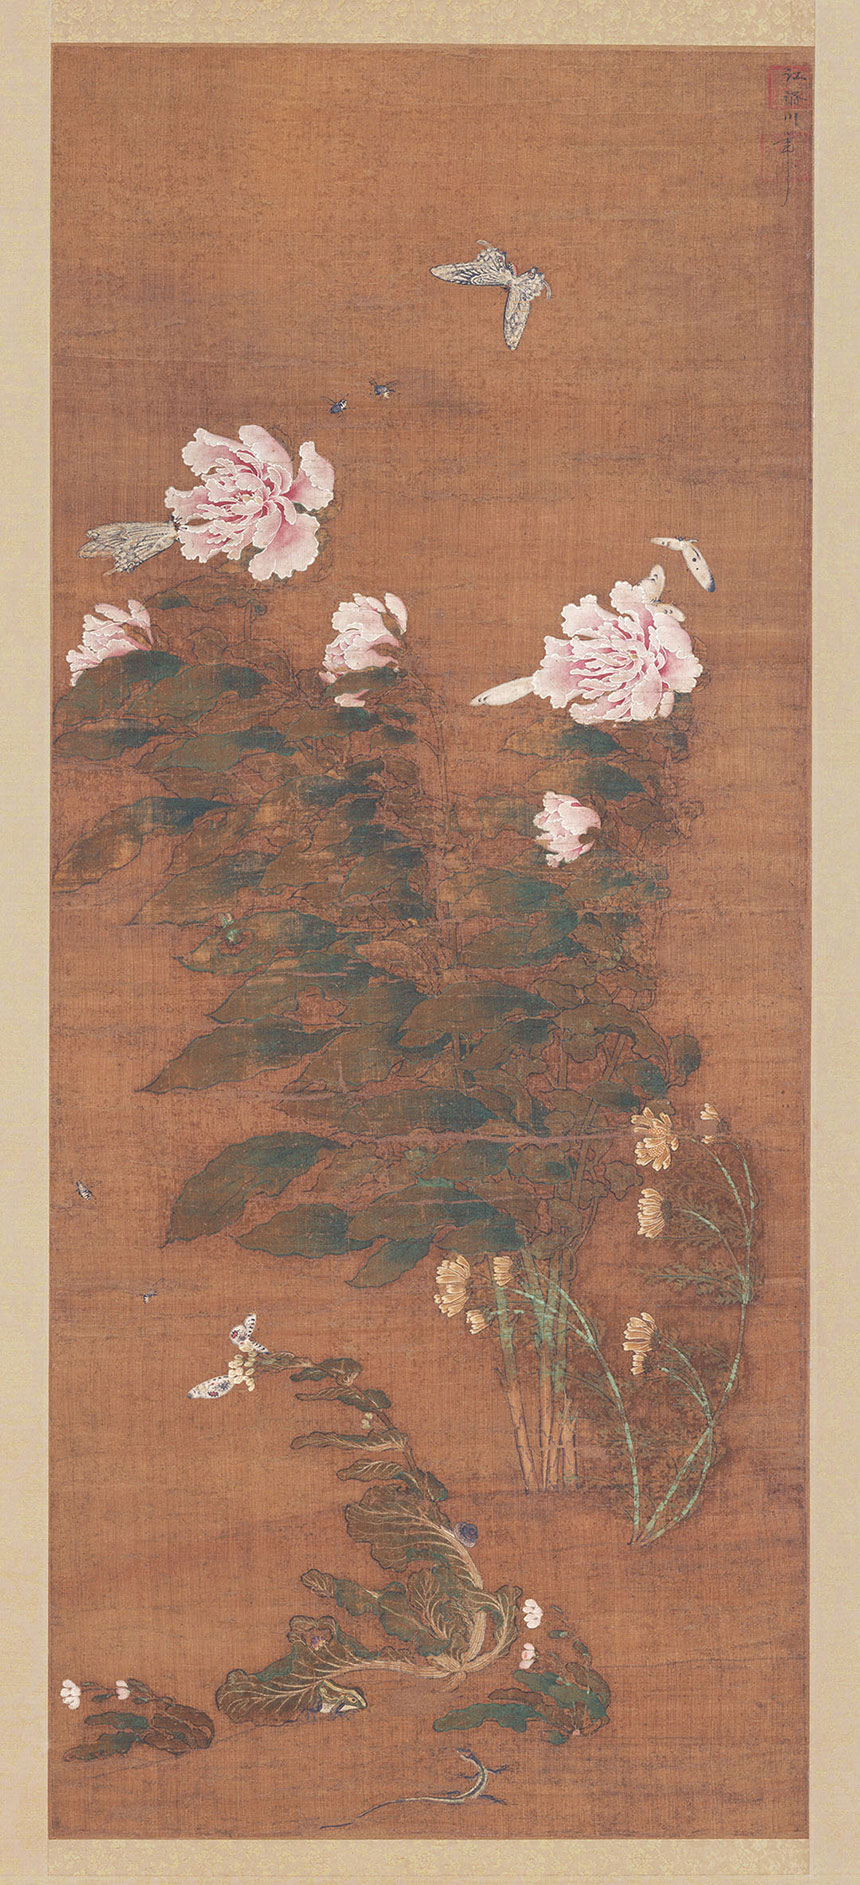 [元] 江济川《草虫图对幅》

绢本 立轴 设色 97.4x40.8 厘米

京都国立博物馆藏